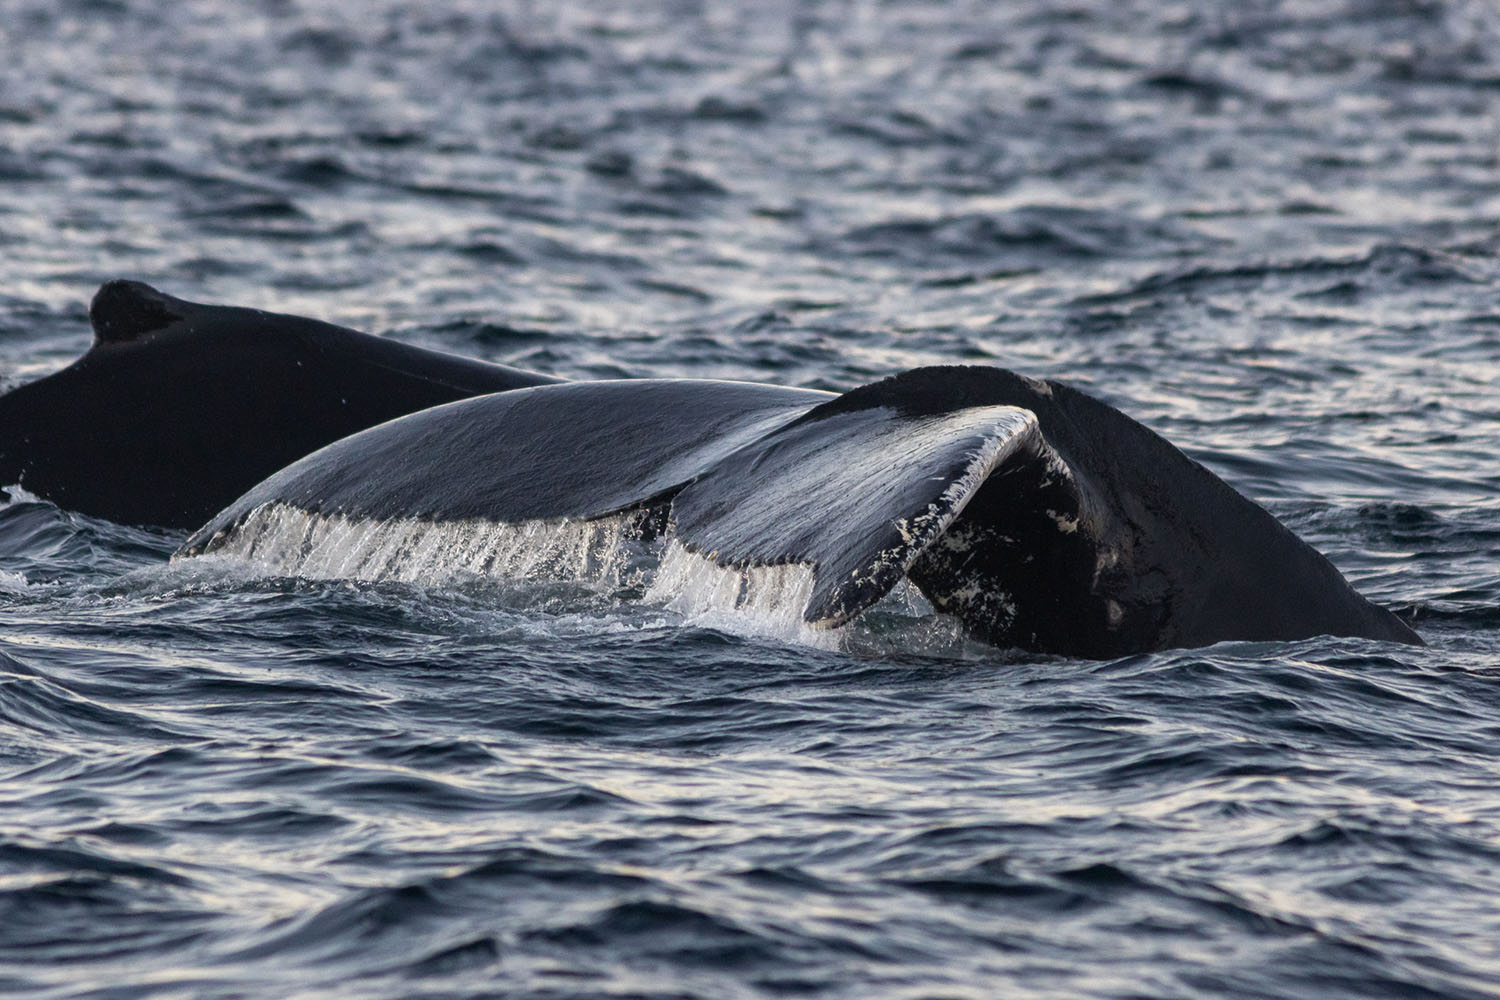 voyage scientifique - orques et baleines a bosse de norvege 47